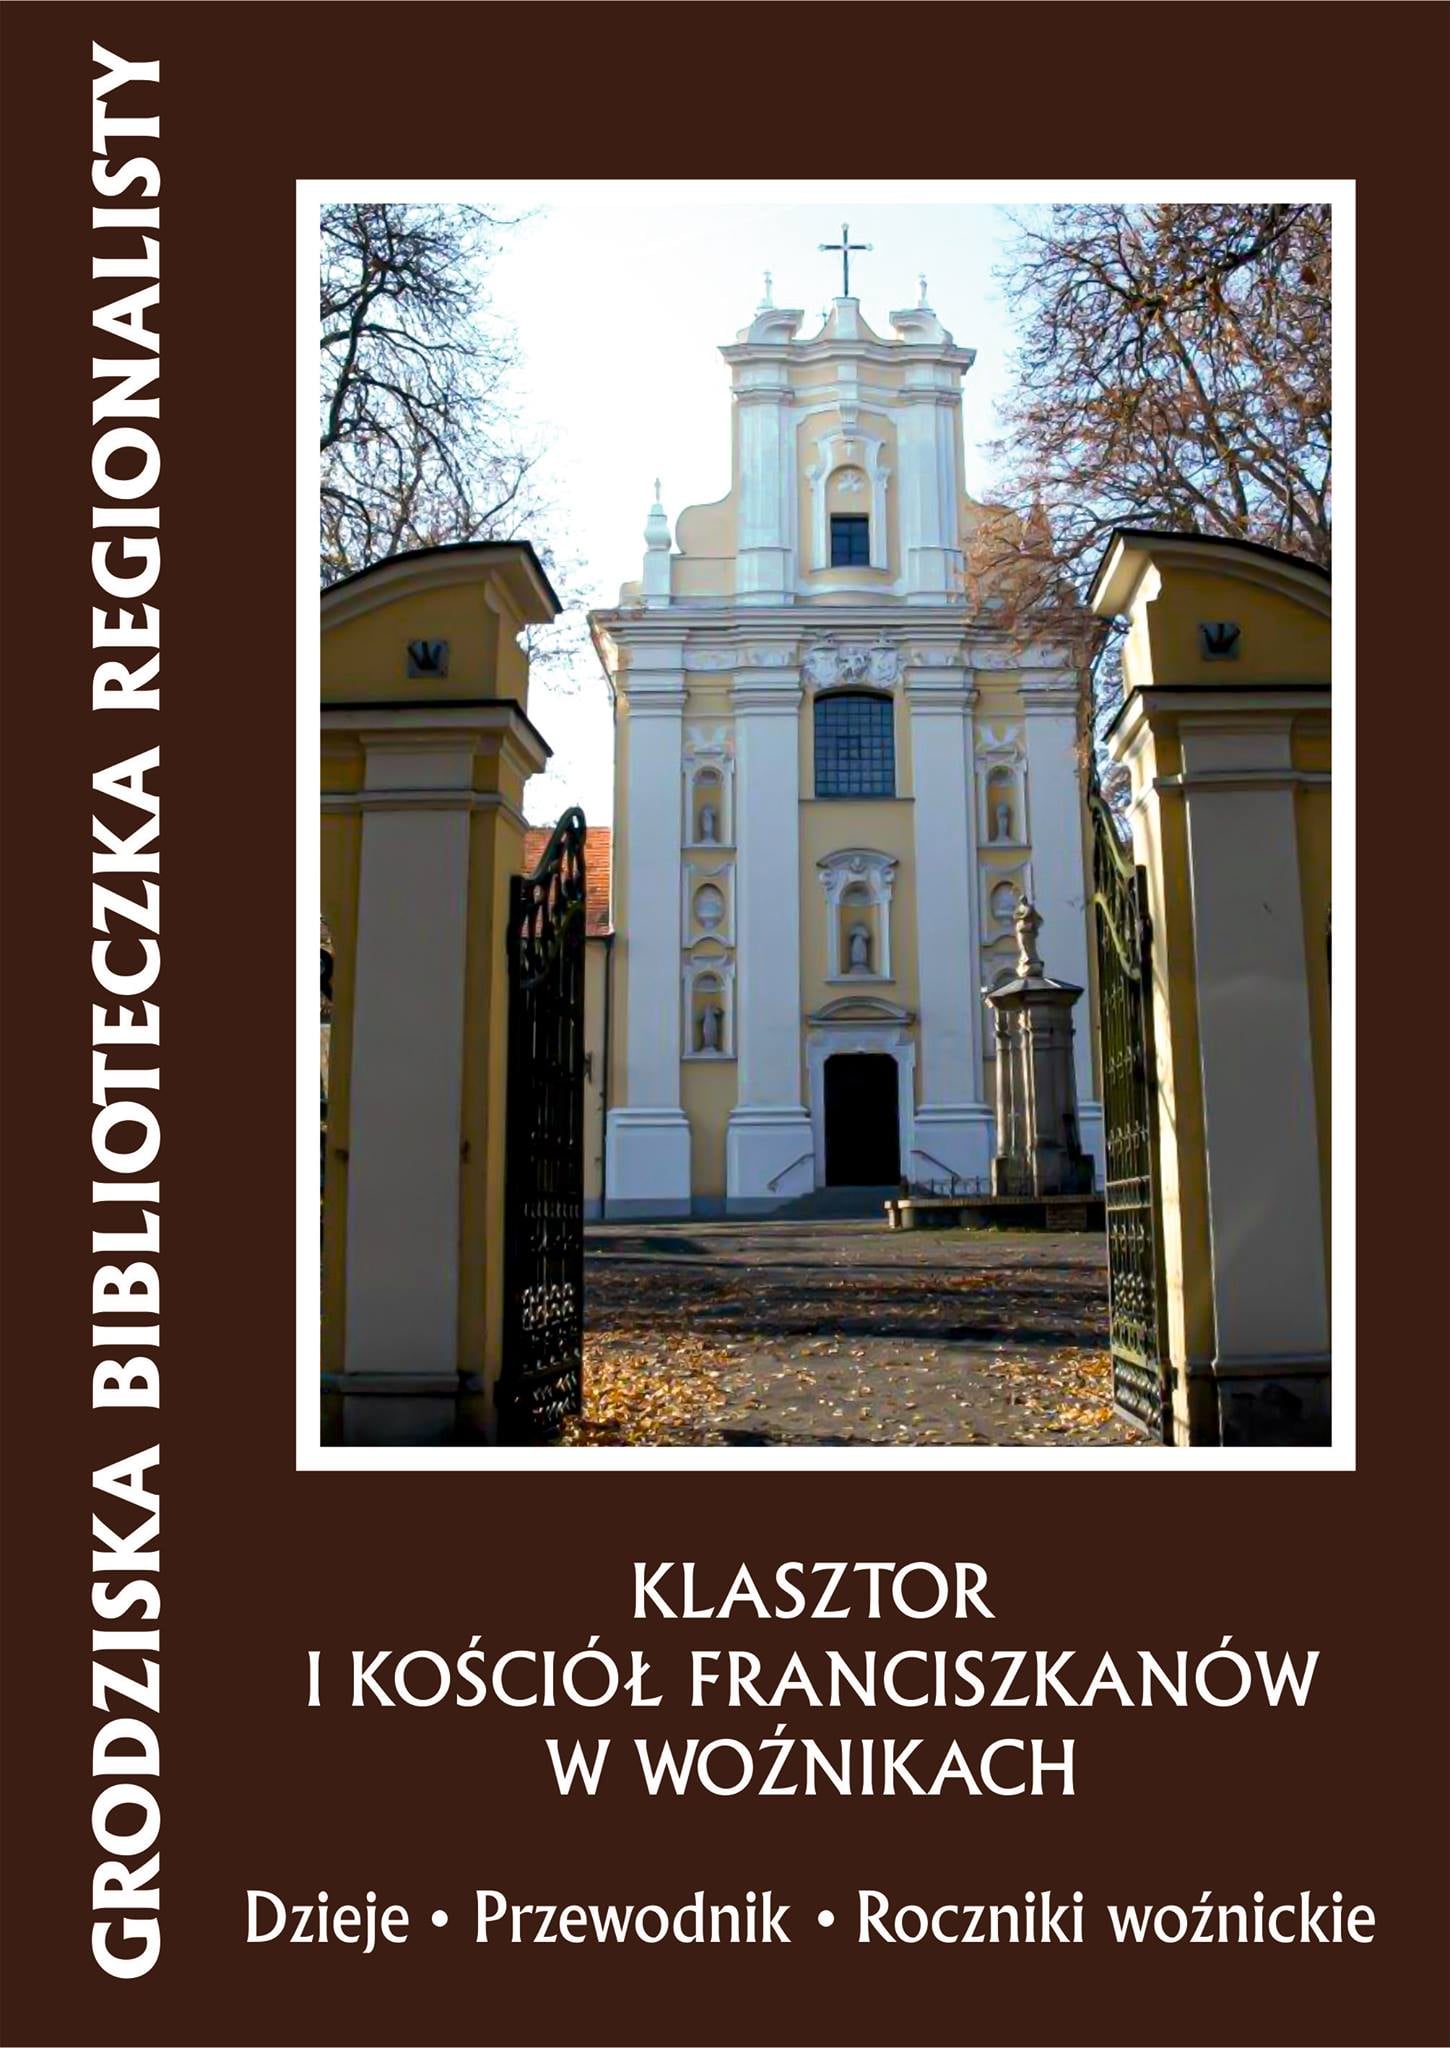 klasztor w woźnikach - FB: Starostwo Powiatowe w Grodzisku Wielkopolskim